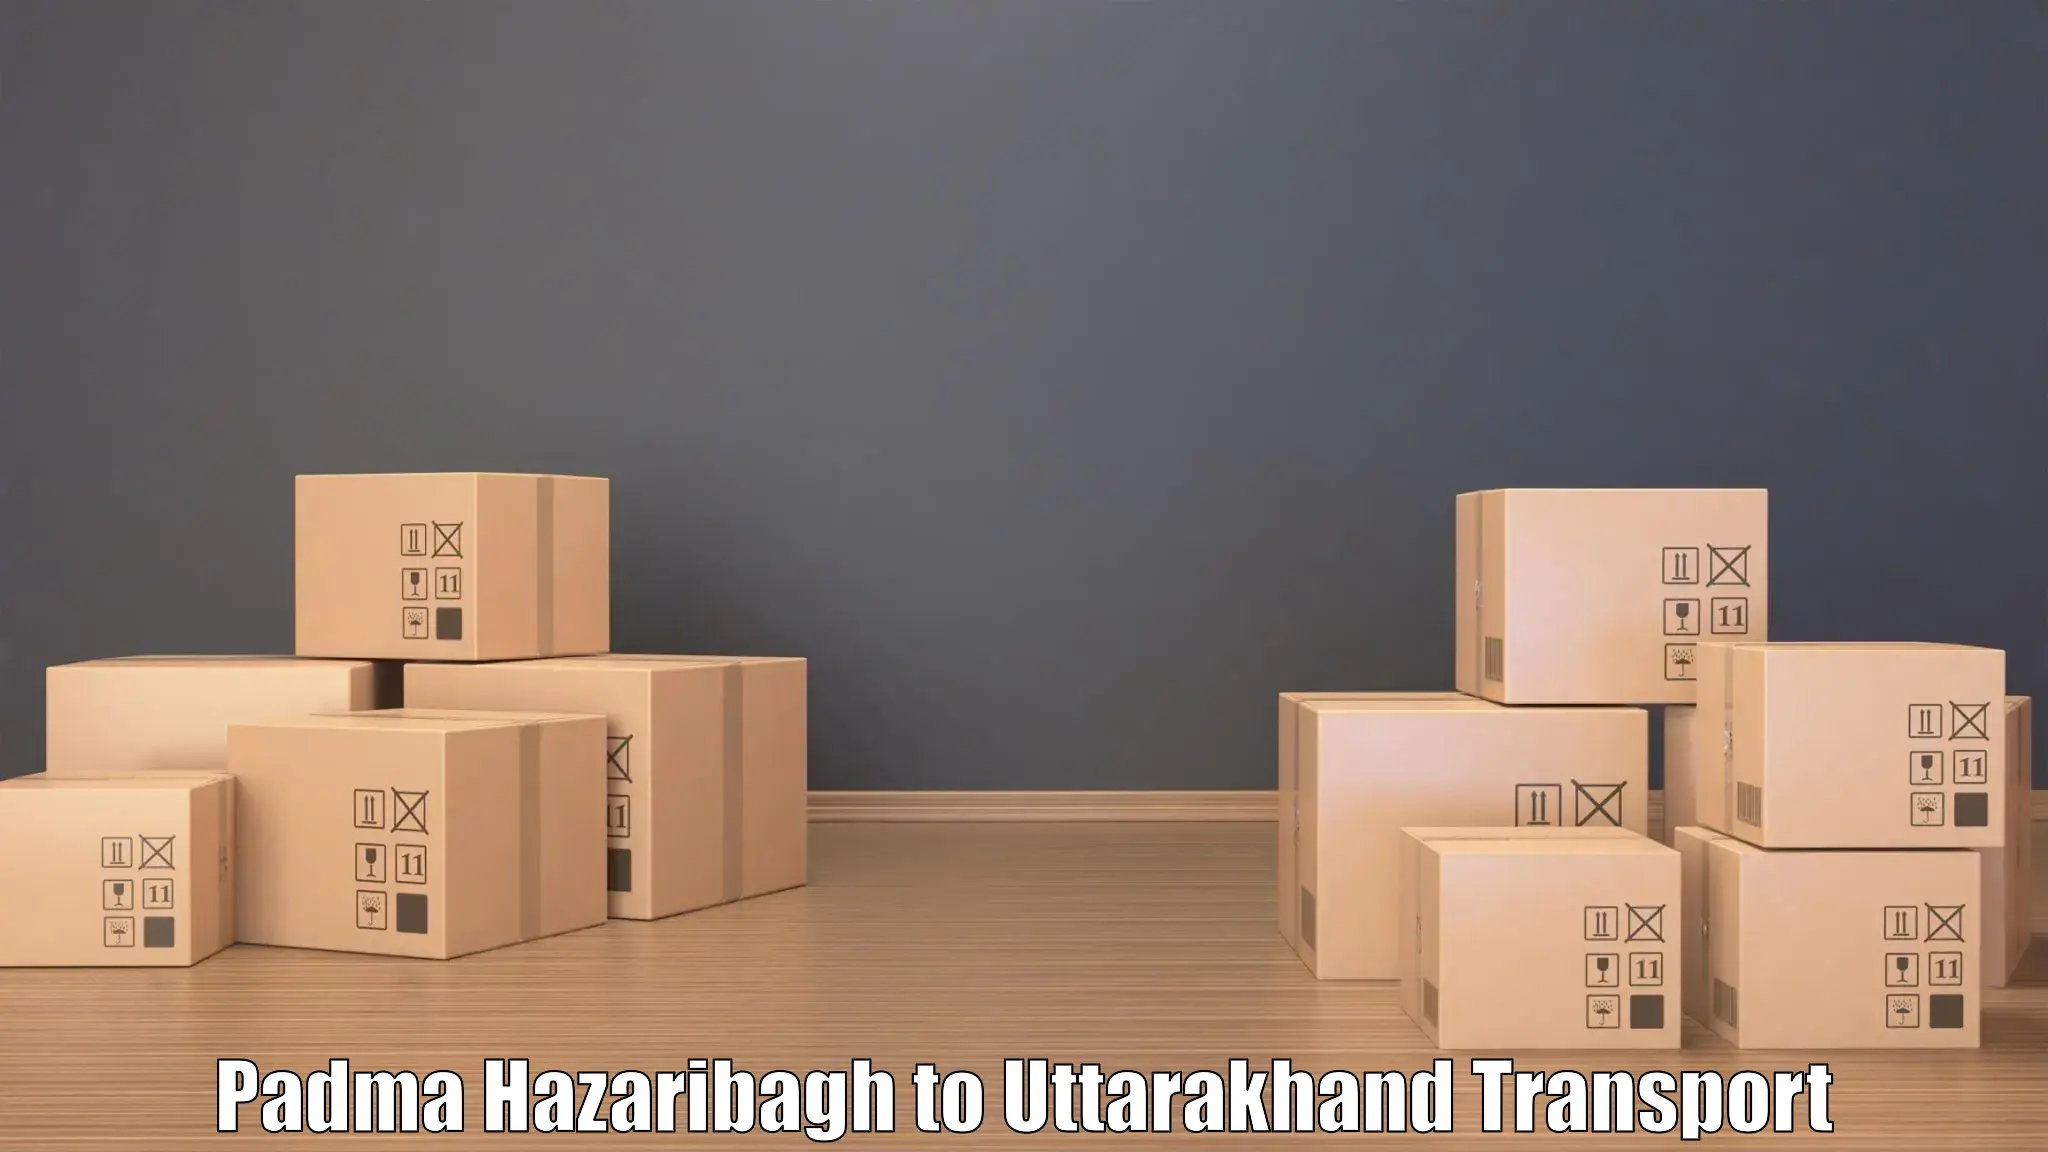 Pick up transport service Padma Hazaribagh to Bageshwar